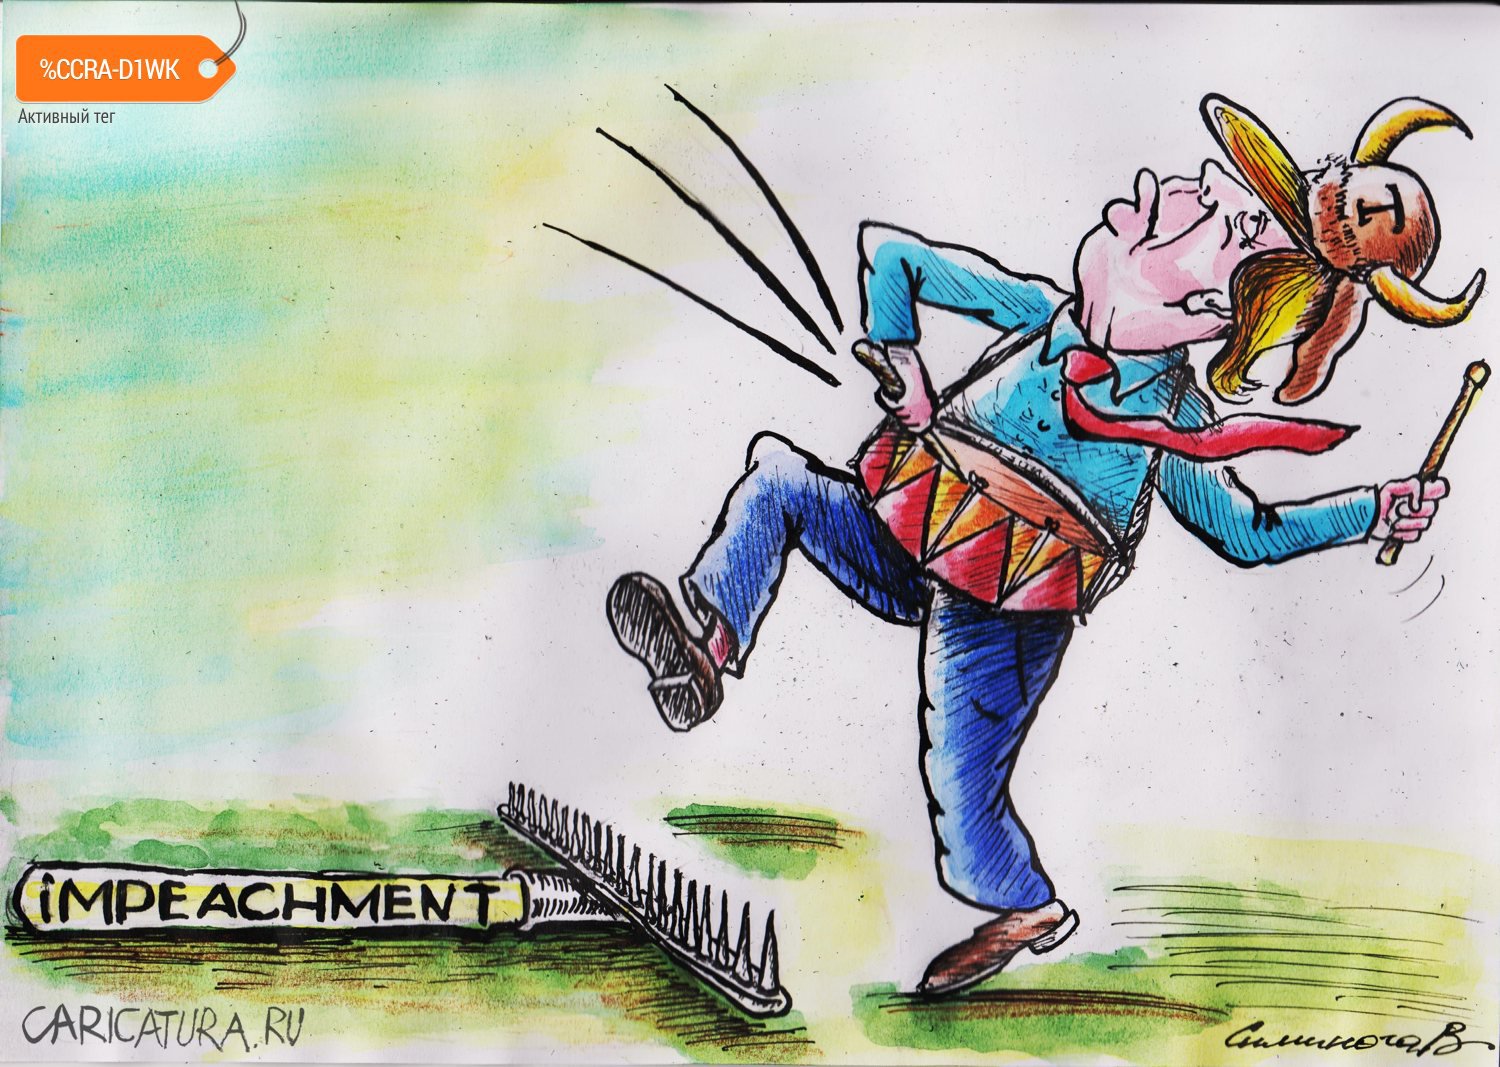 Карикатура "Импичмент", Vadim Siminoga